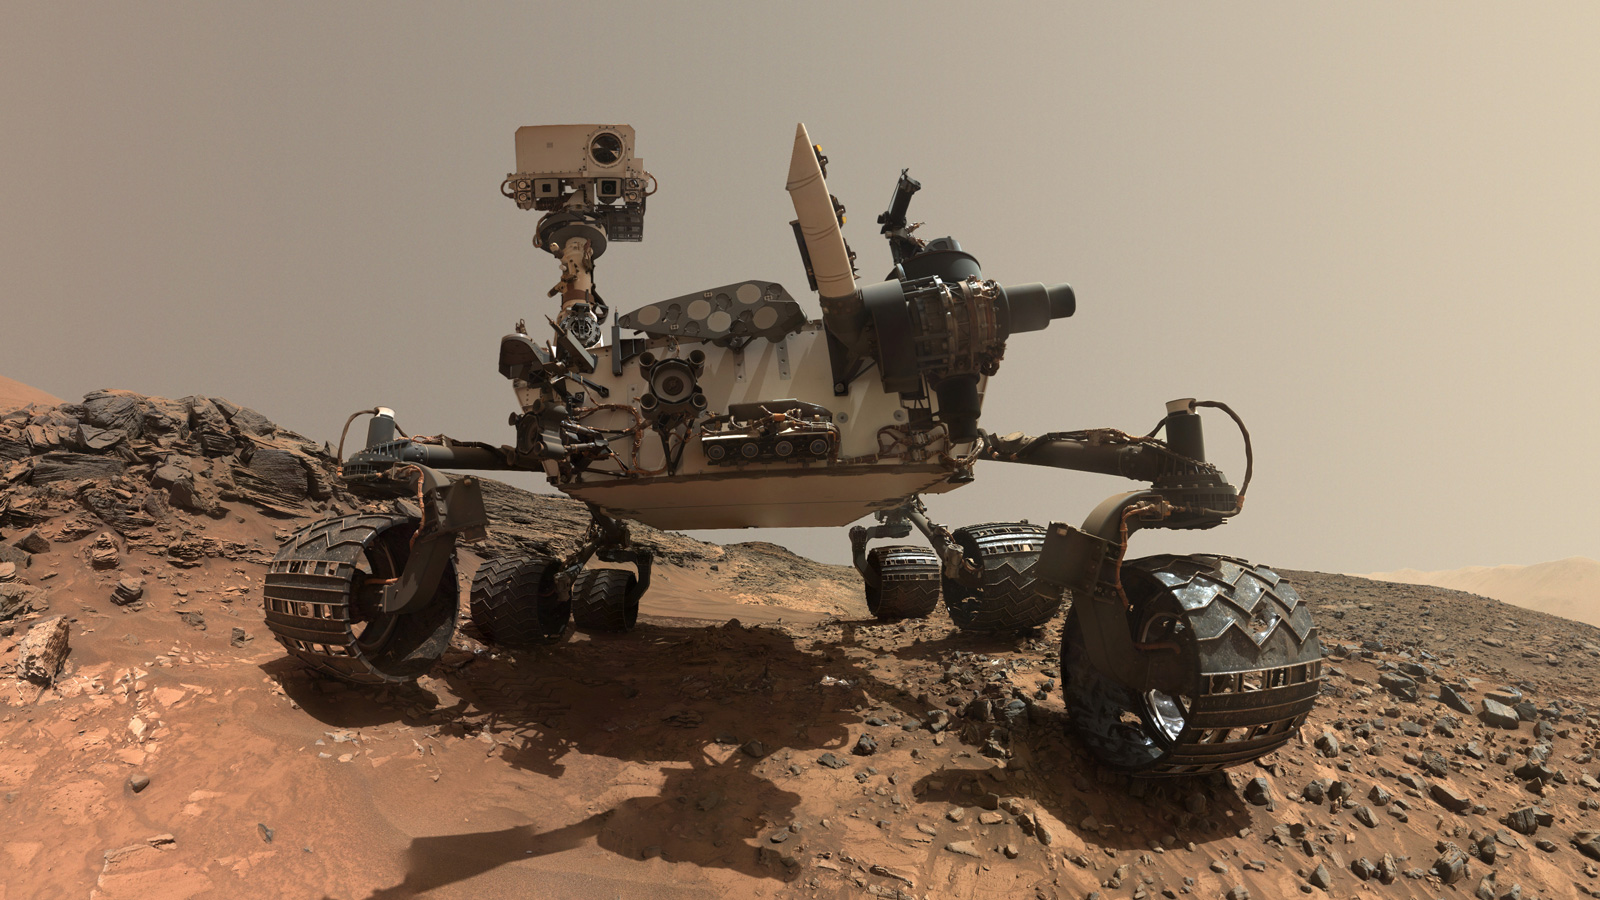 Curiosity NASA Mars Rover Frontal Image - Source: NASA